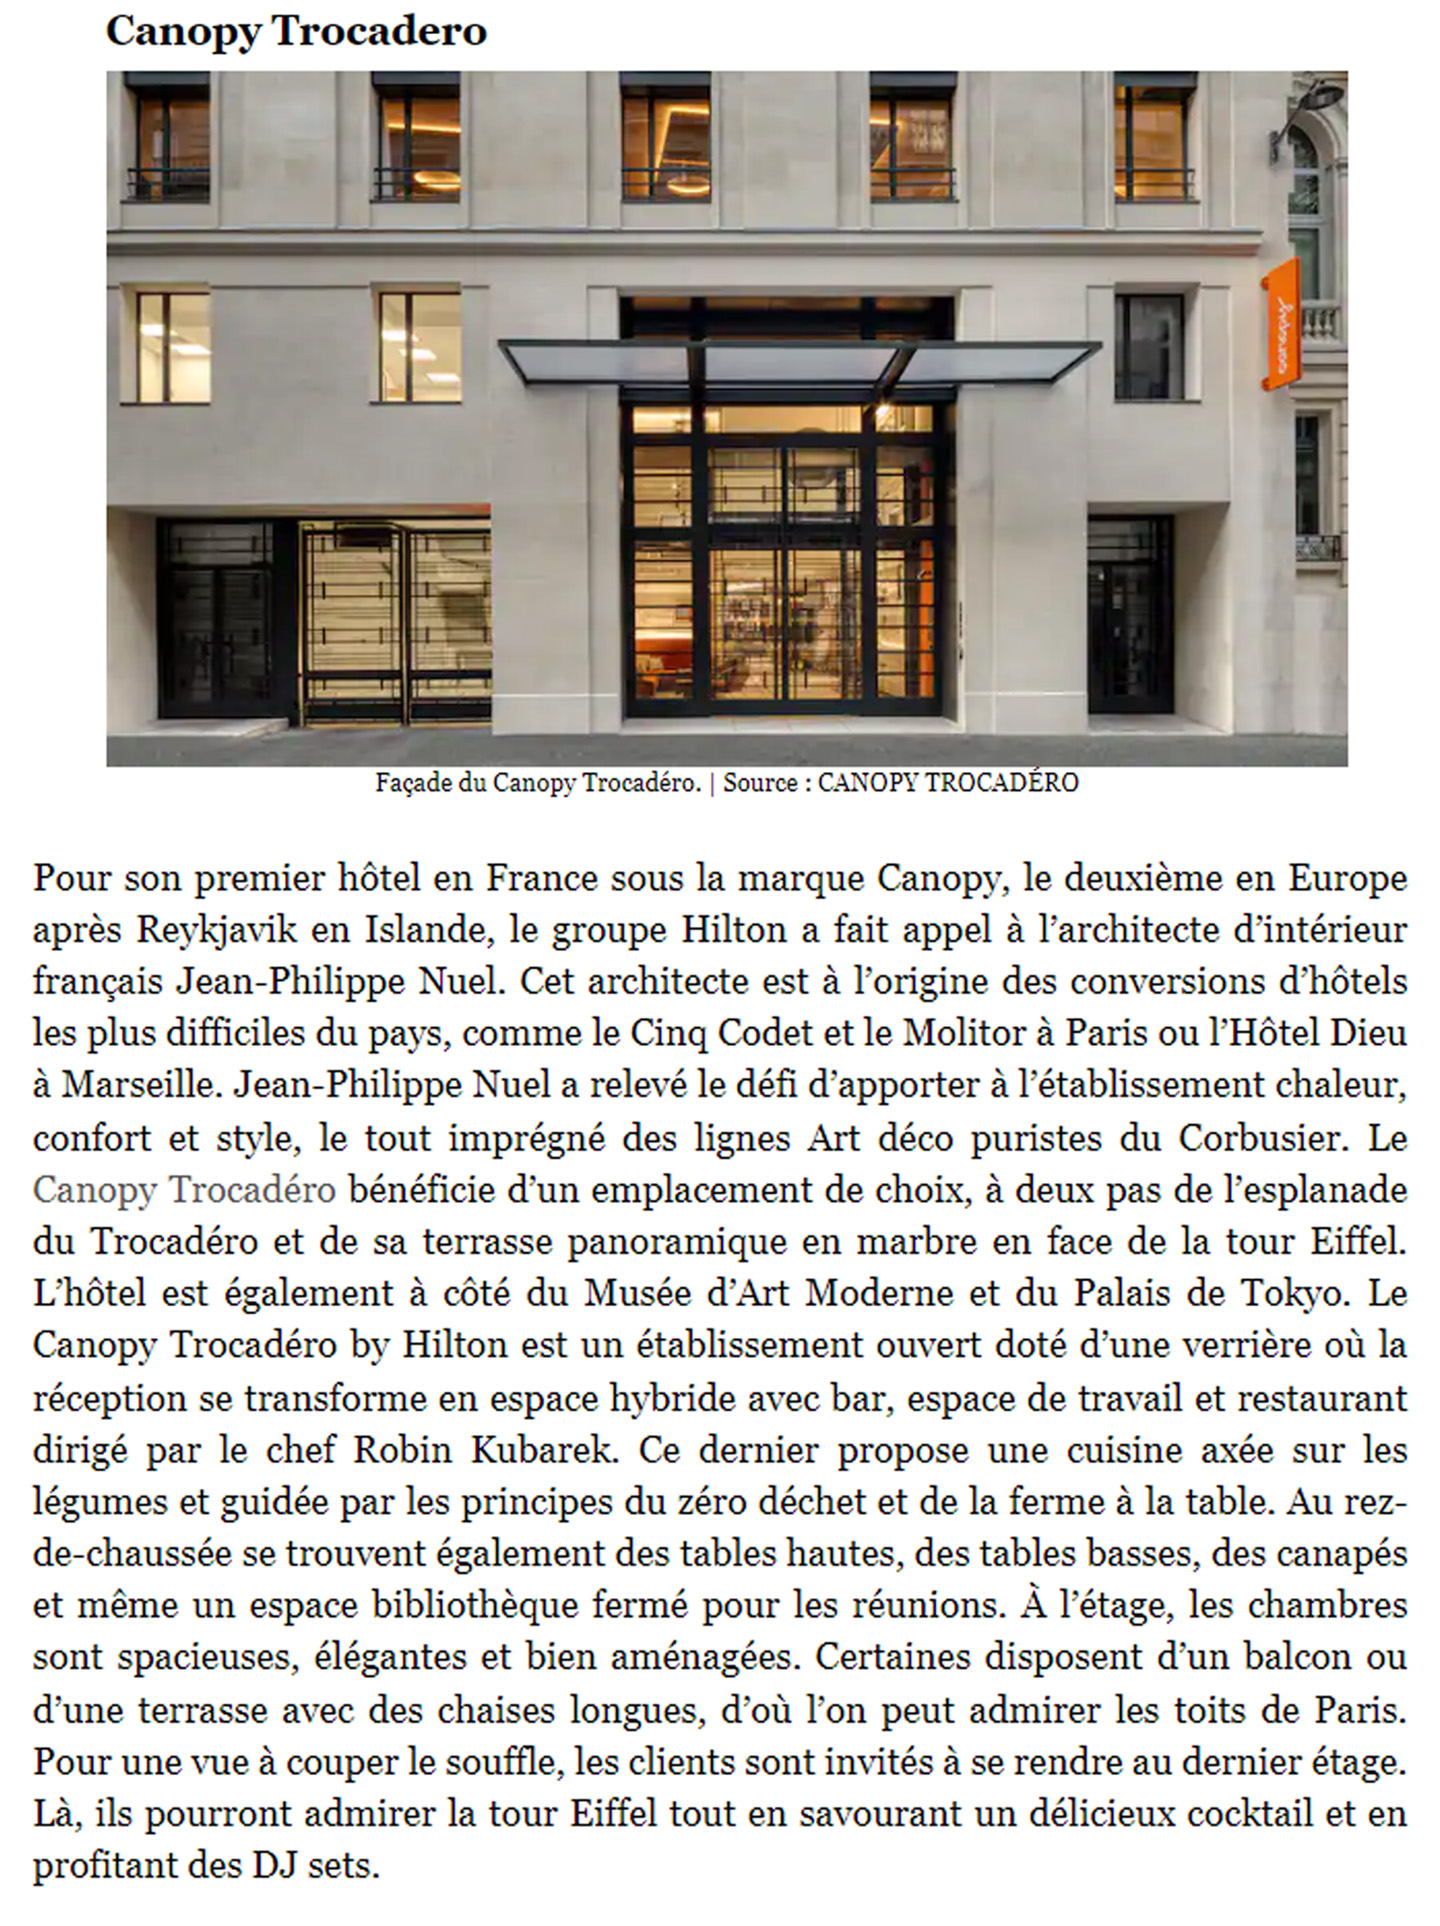 Article sur l'InterContinental Lyon Hotel Dieu réalisé par le studio Jean-Philippe Nuel dans le magazine Forbes, nouvel hotel de luxe, architecture d'intérieur de luxe, patrimoine historique